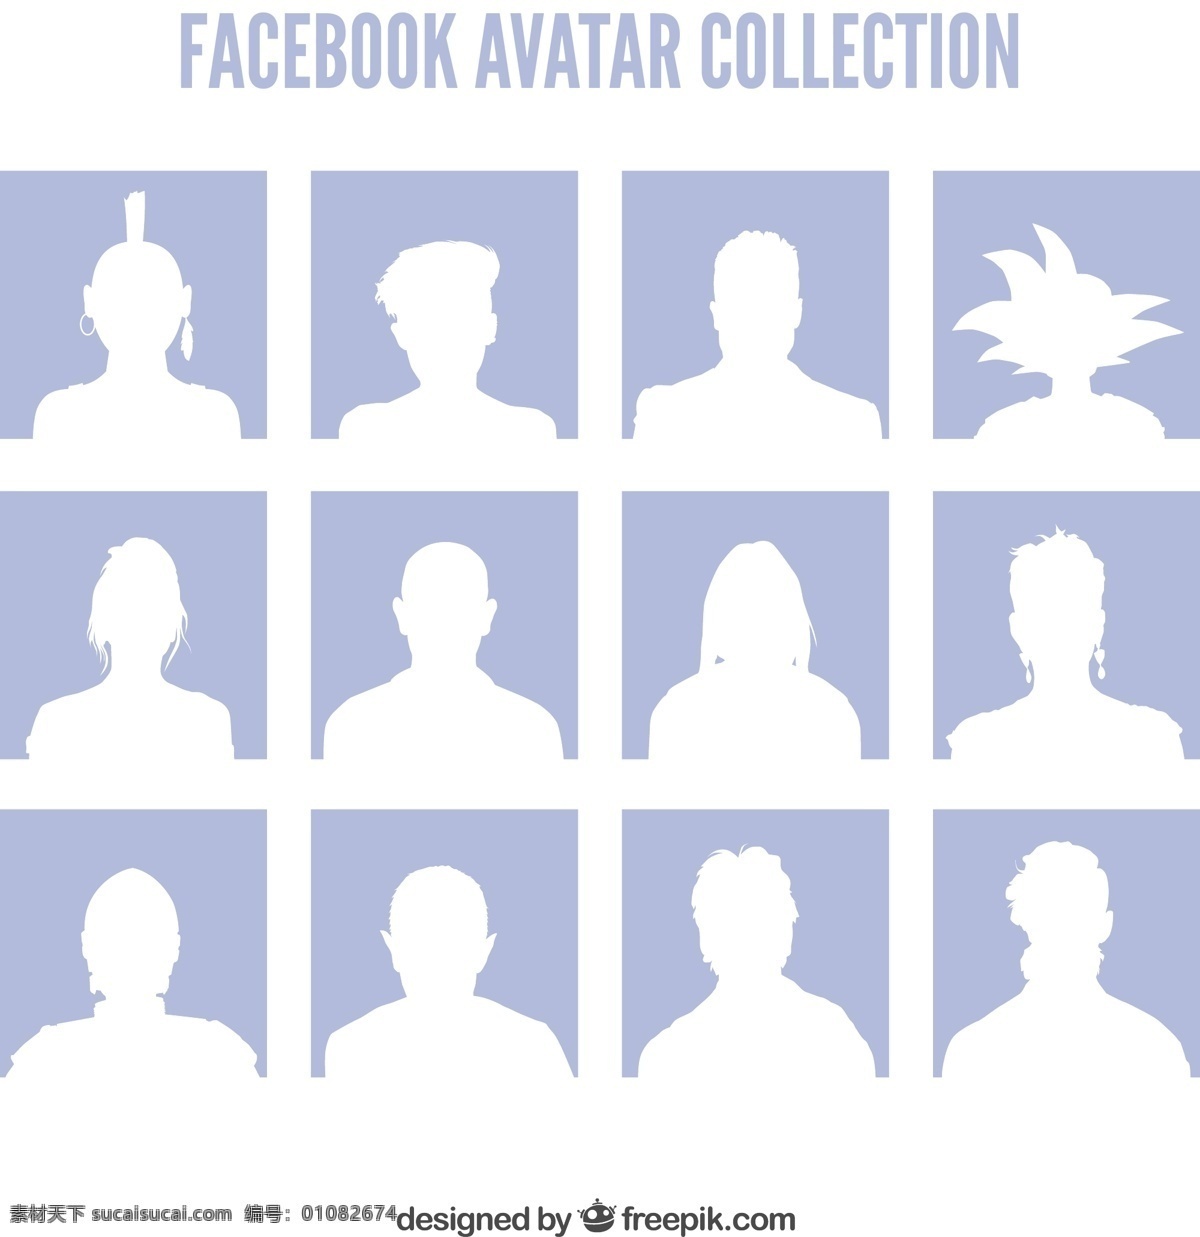 脸 书 人物 头像 剪影 矢量图 社交媒体 脸书 用户头像